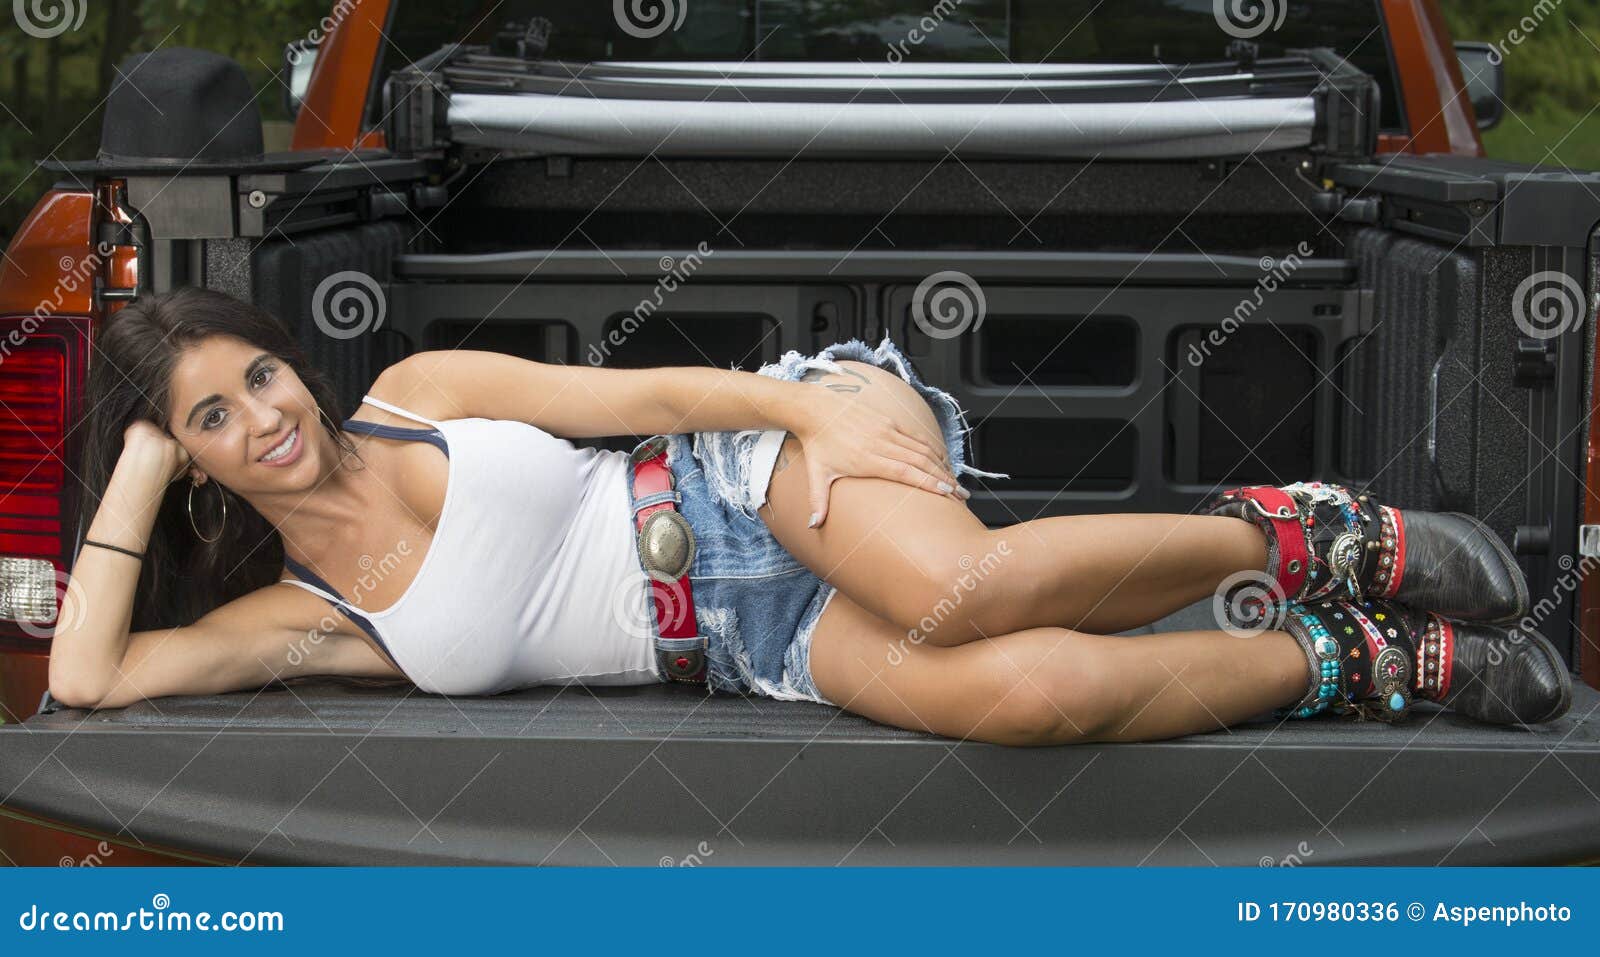 164 Sexy Woman Truck Stock Photos